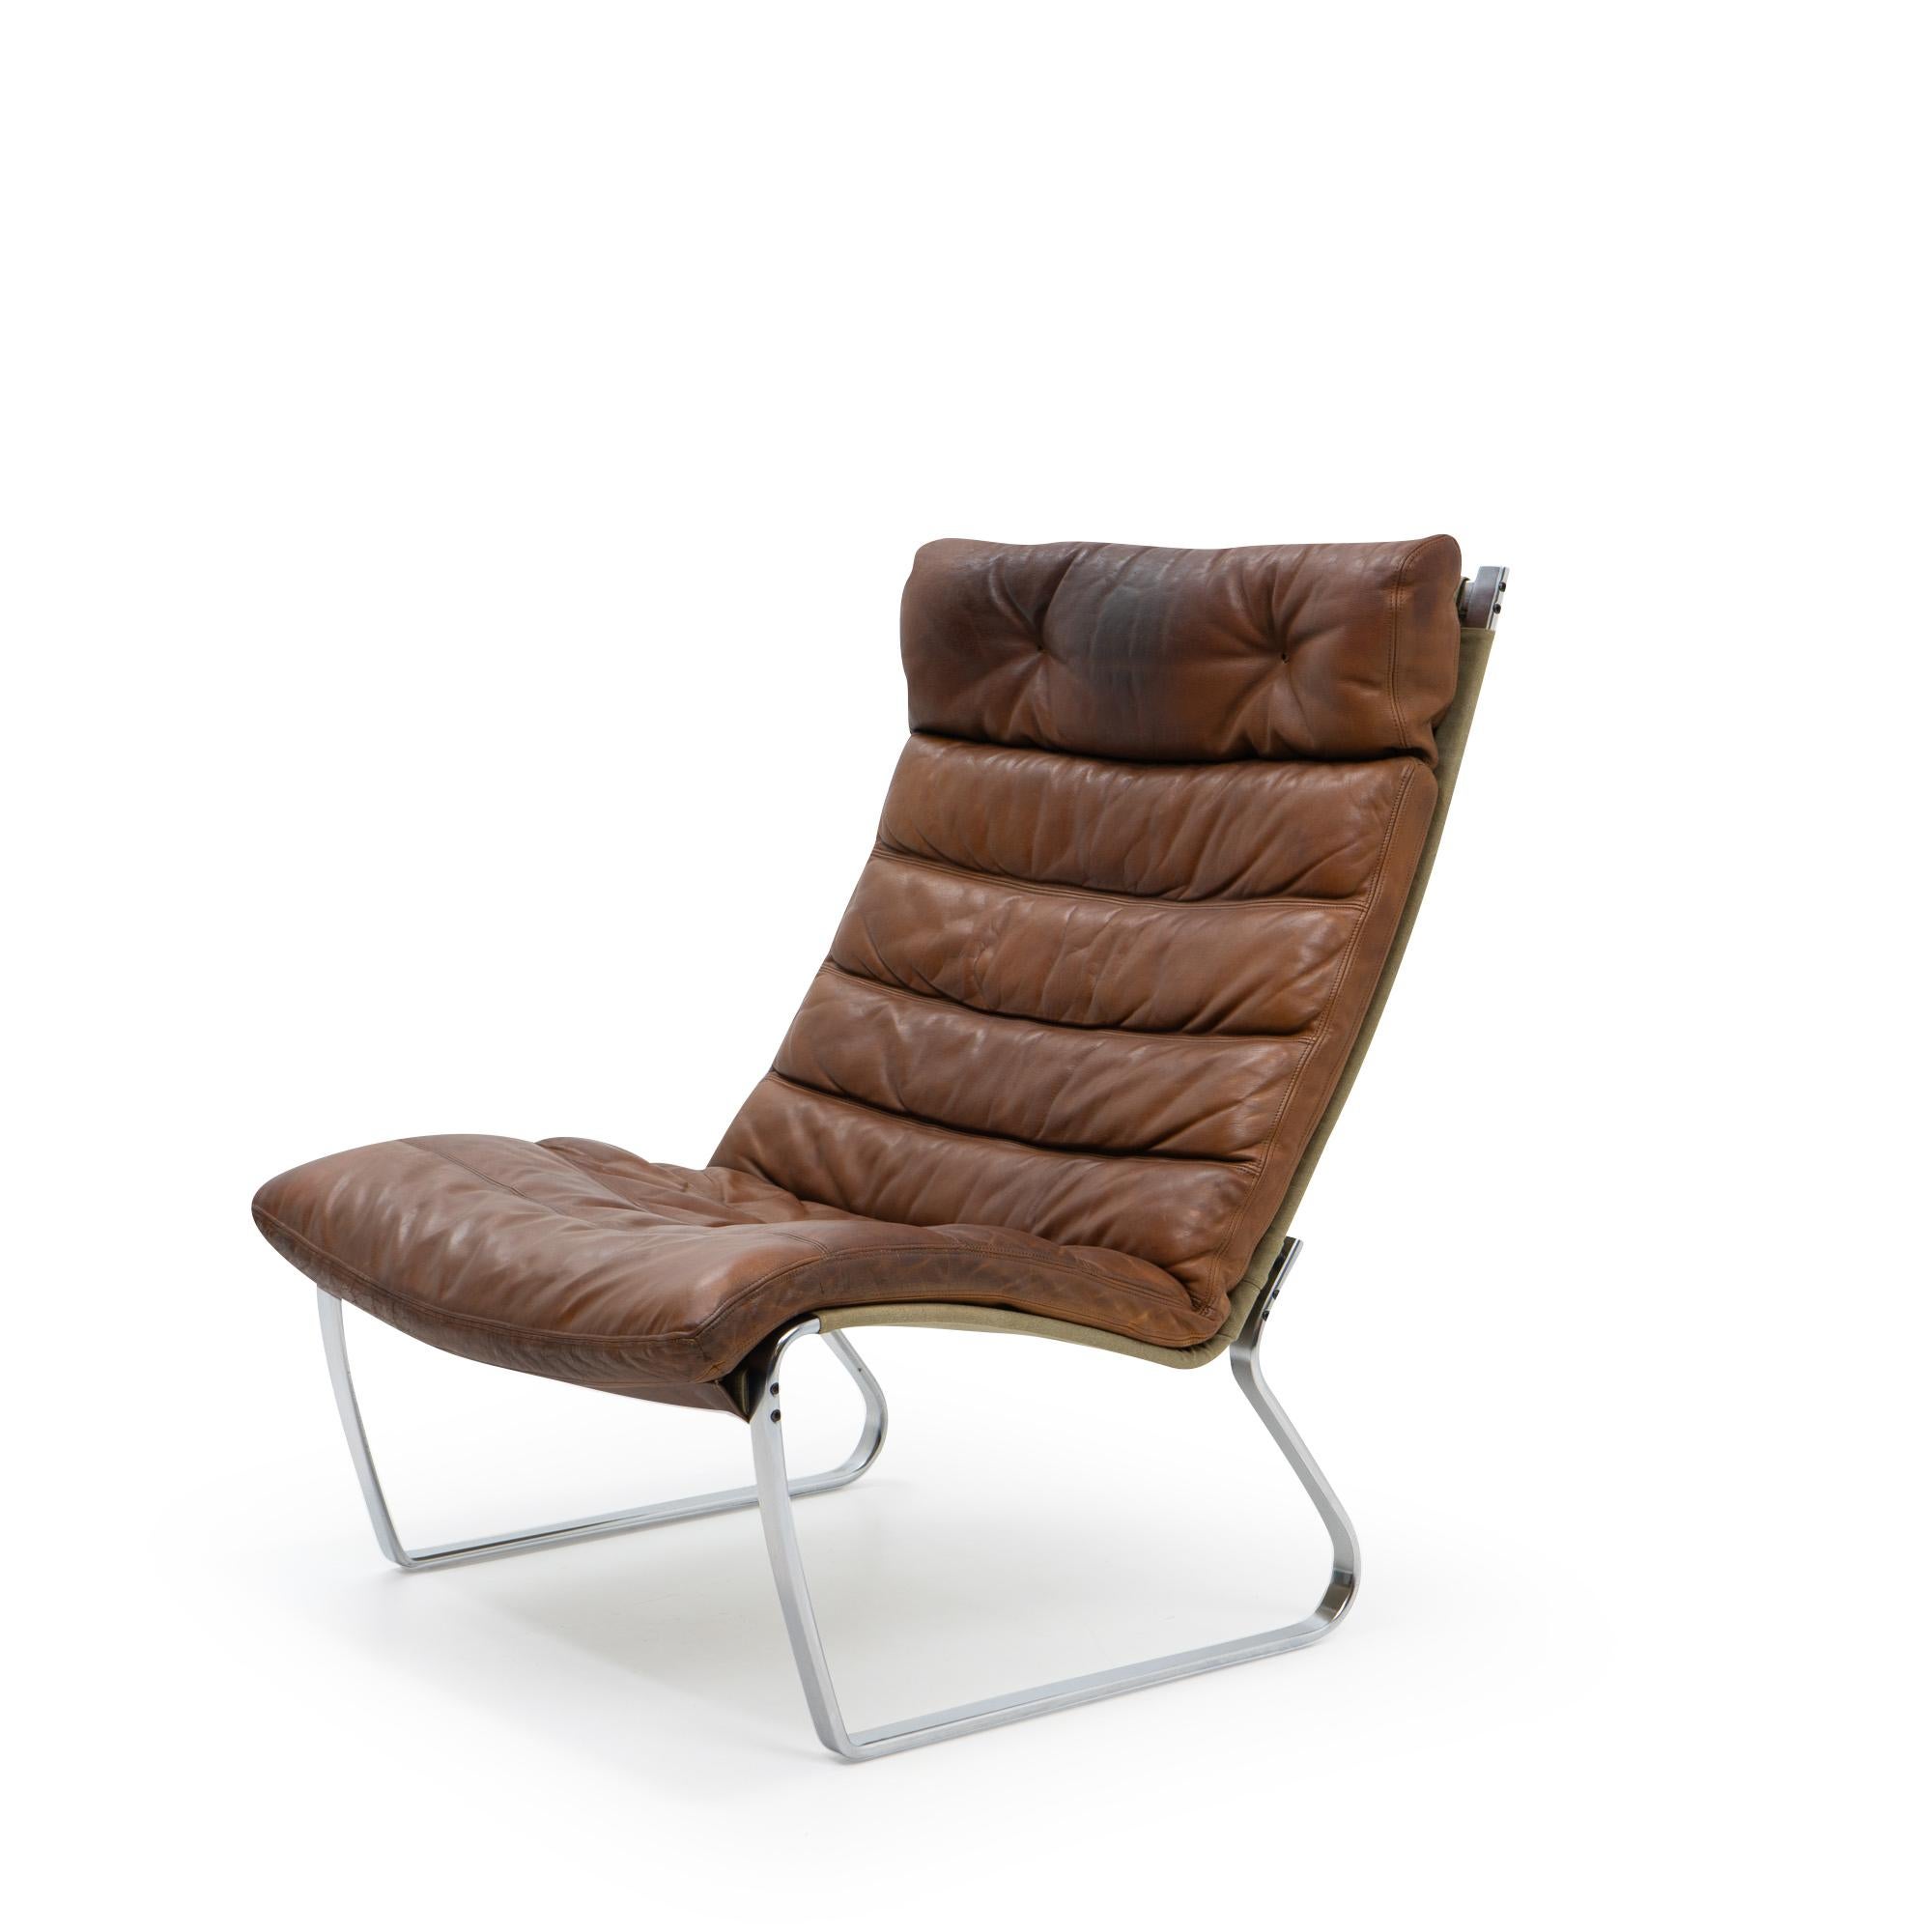 JK 720 Lounge Chair von Jørgen Kastholm für Kill International: 

Der JK 720 Chair wurde nur für kurze Zeit in den 1970er Jahren von der Firma Alfred Kill hergestellt. Er verfügt über einen Rahmen aus gebürstetem Stahl, ein Gestell aus Segeltuch und